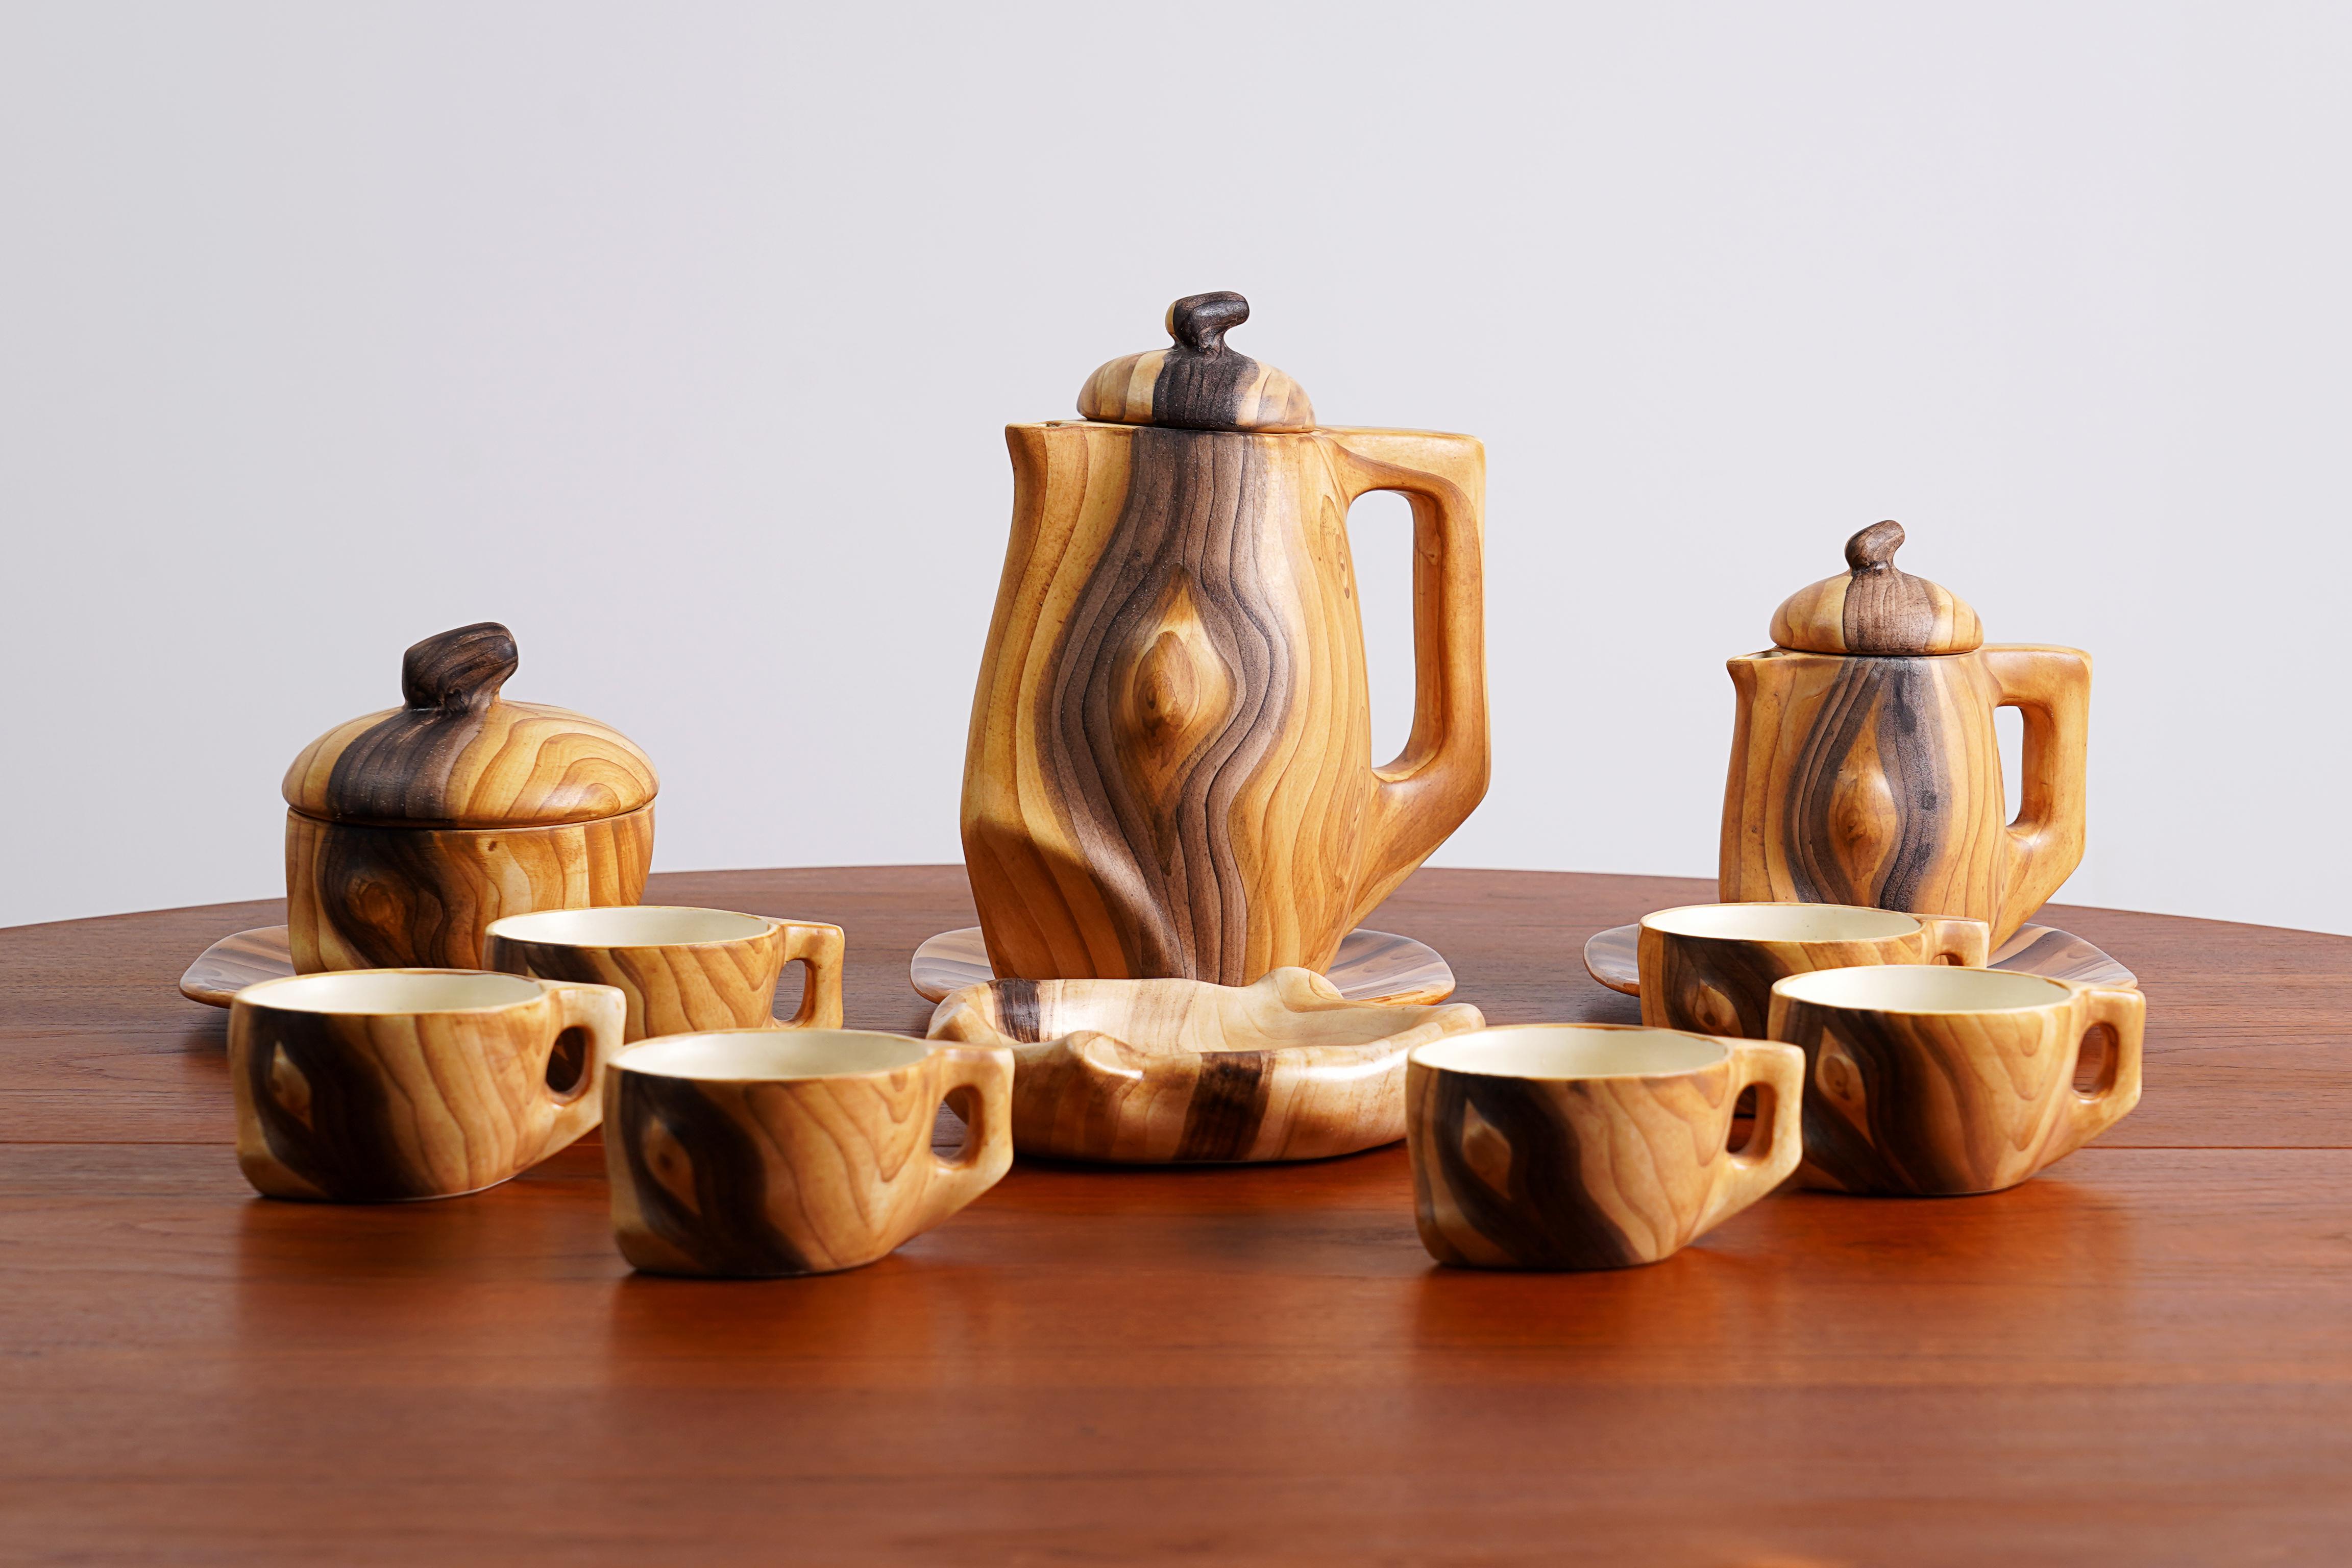 Service à thé en céramique 'Faux Bois' de 13 pièces par Grandjean Jourdan, Vallauris France années 1950 / 1960.

Certaines pièces portent la mention Vallauris en dessous.

L'ensemble est composé de 6 tasses / 2 pots / 1 plat / 1 sucrier / 3